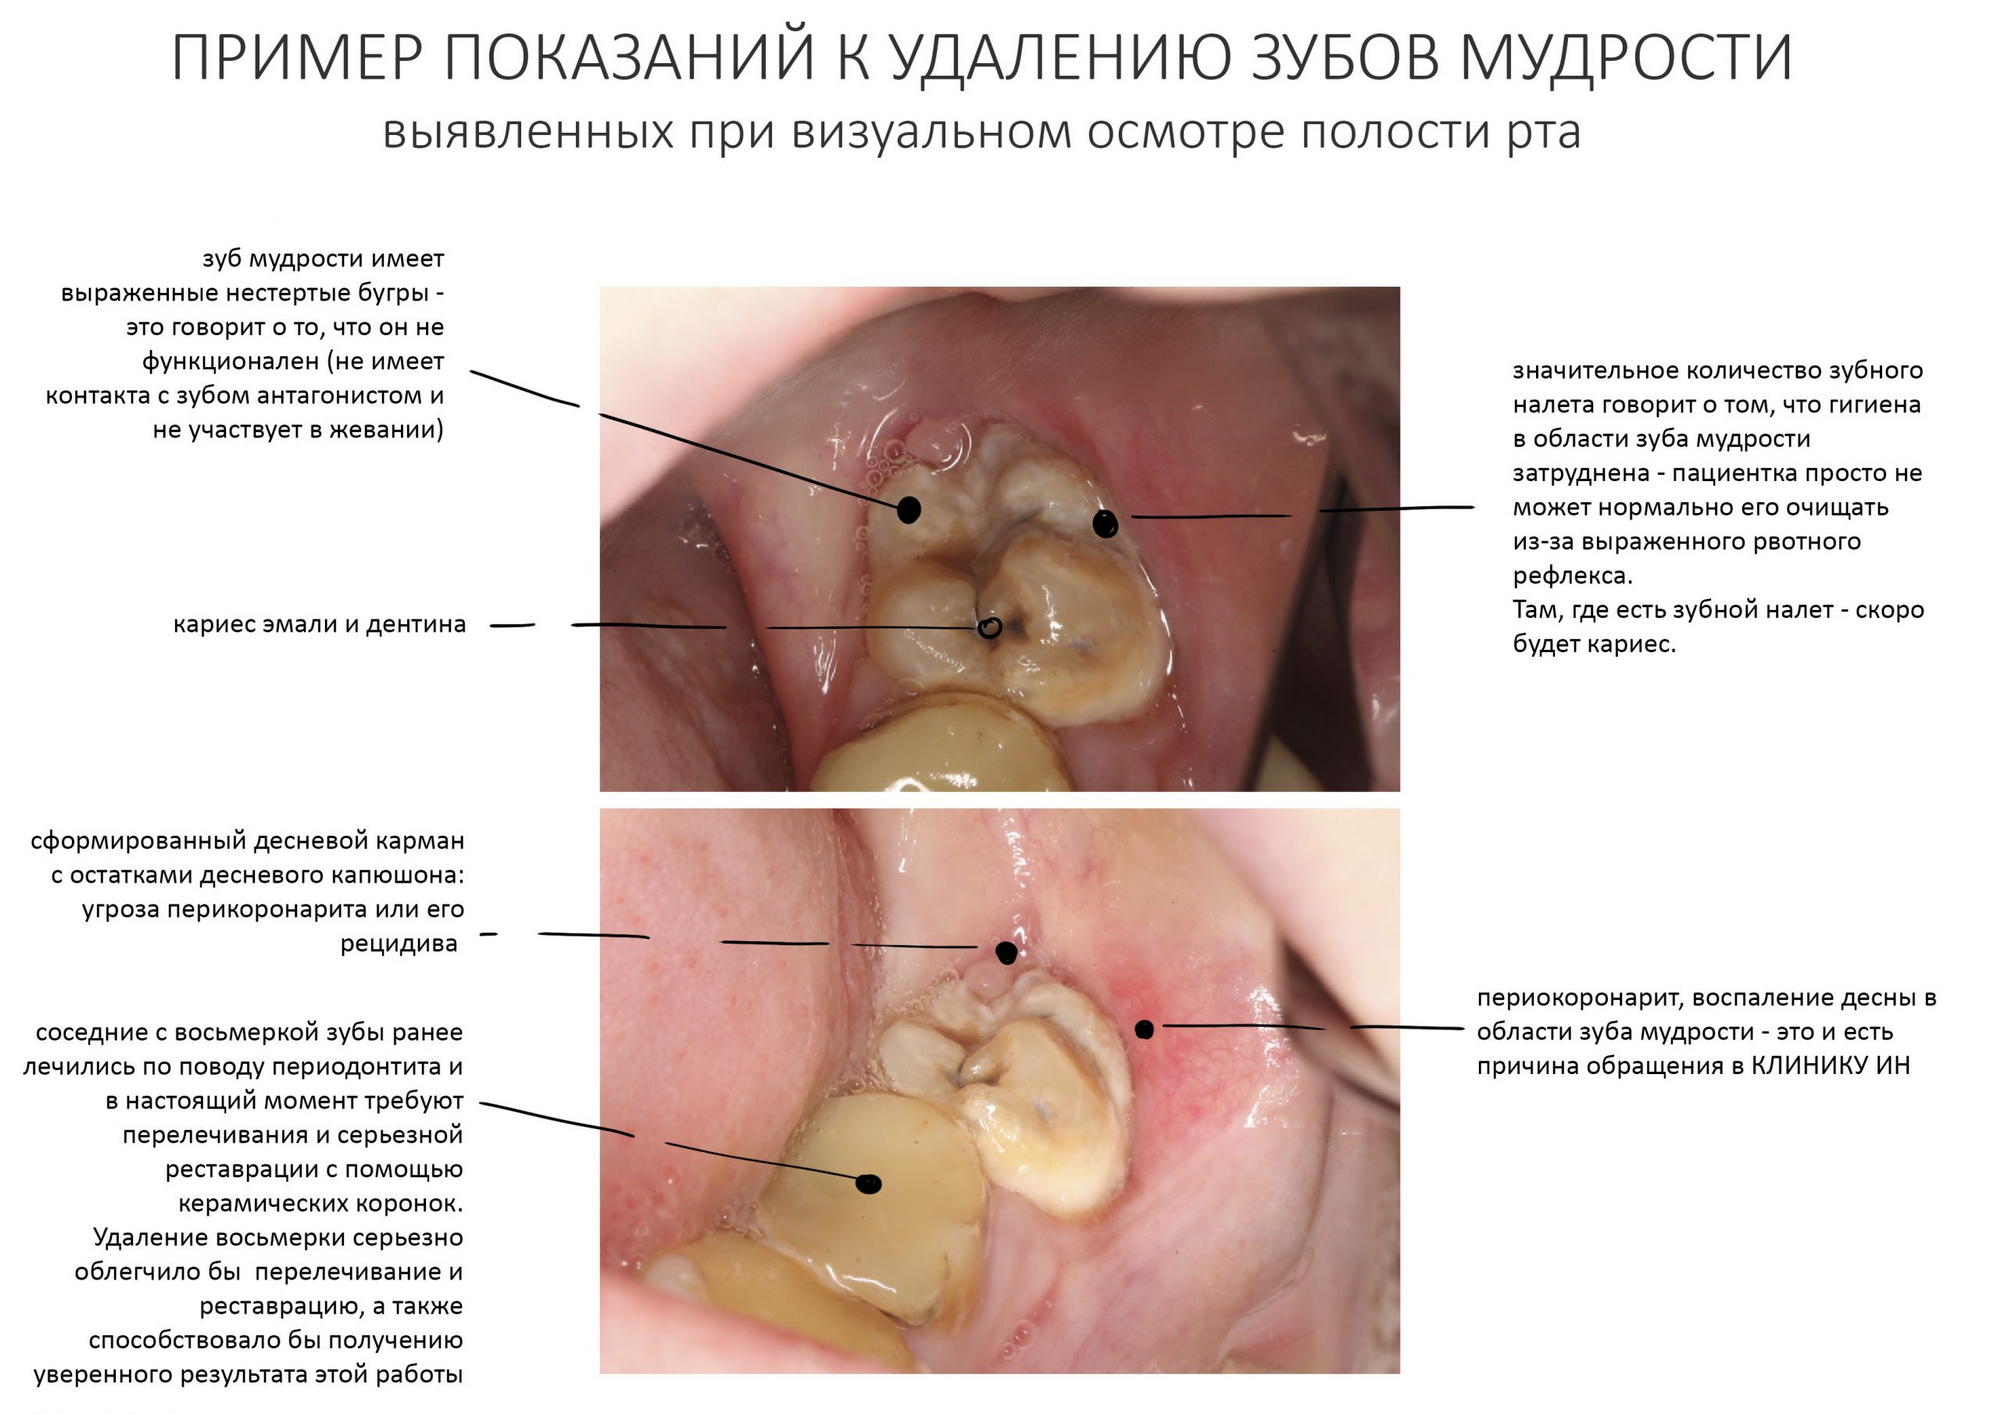 Что делать при появлении дырки в зубе?